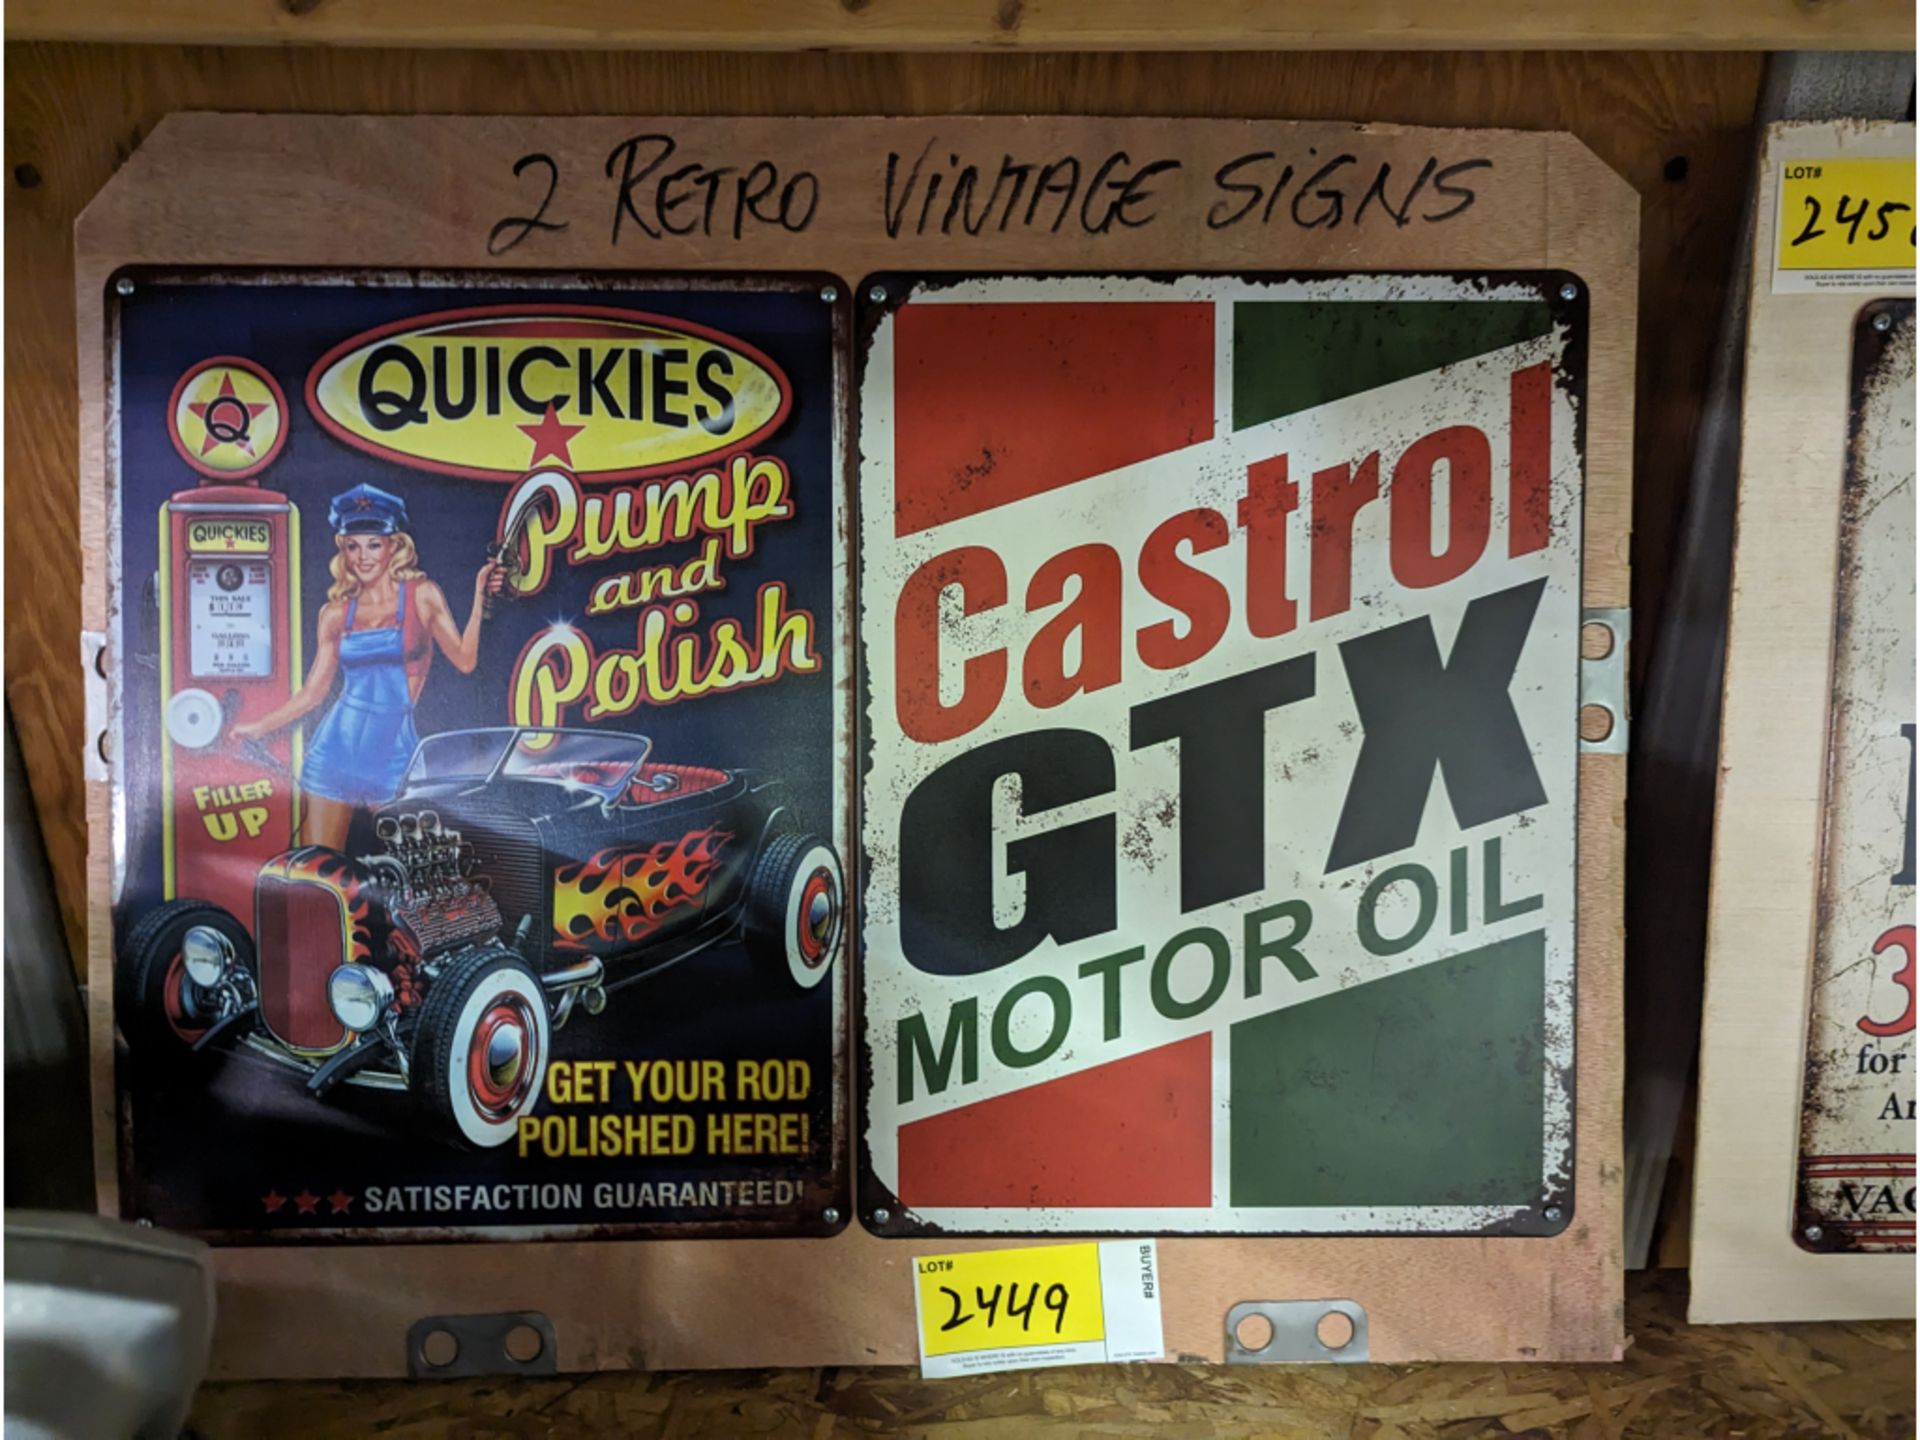 2 "Retro Vintage Signs"